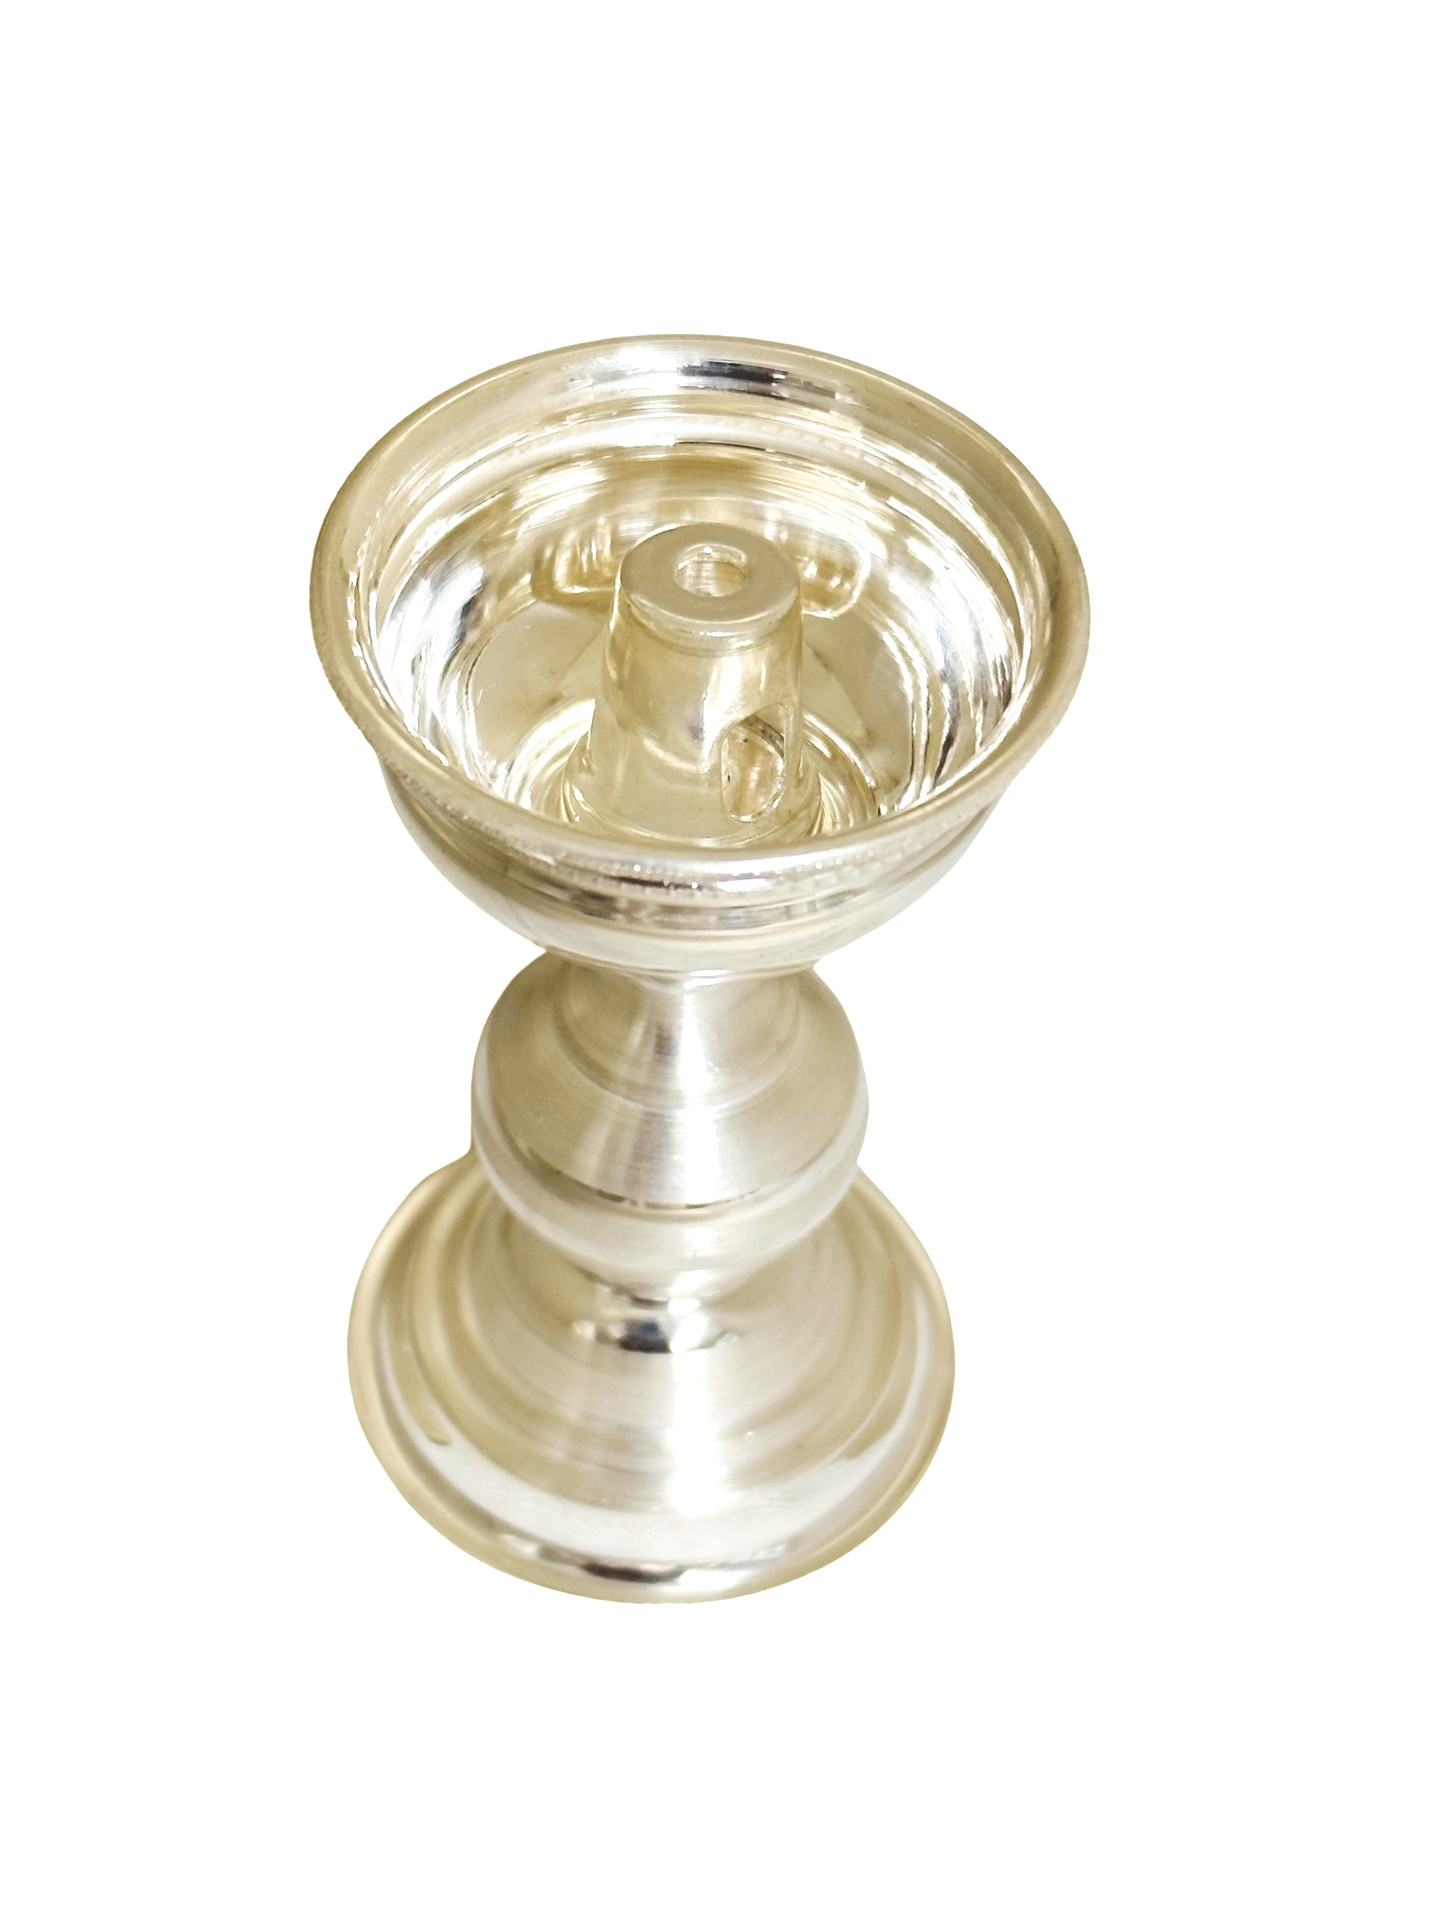 925 Silver Plain Cup  kuthuvilakku- Kundhulu 3 Inches